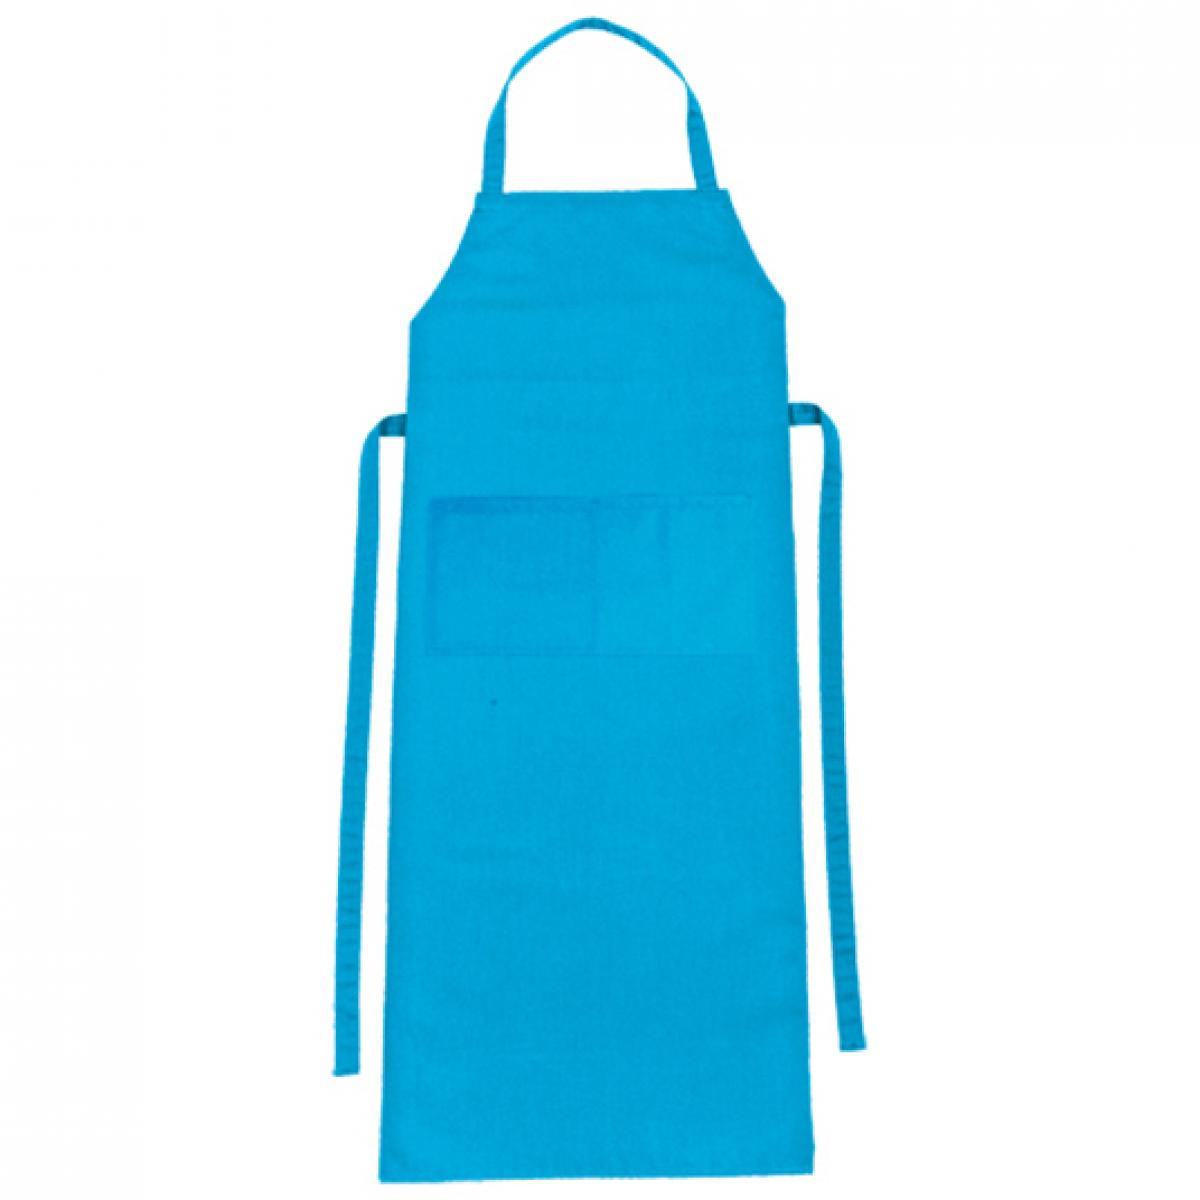 Hersteller: CG Workwear Herstellernummer: 01146-01 Artikelbezeichnung: Latzschürze Verona Classic Bag 90 x 75 cm Farbe: Turquoise